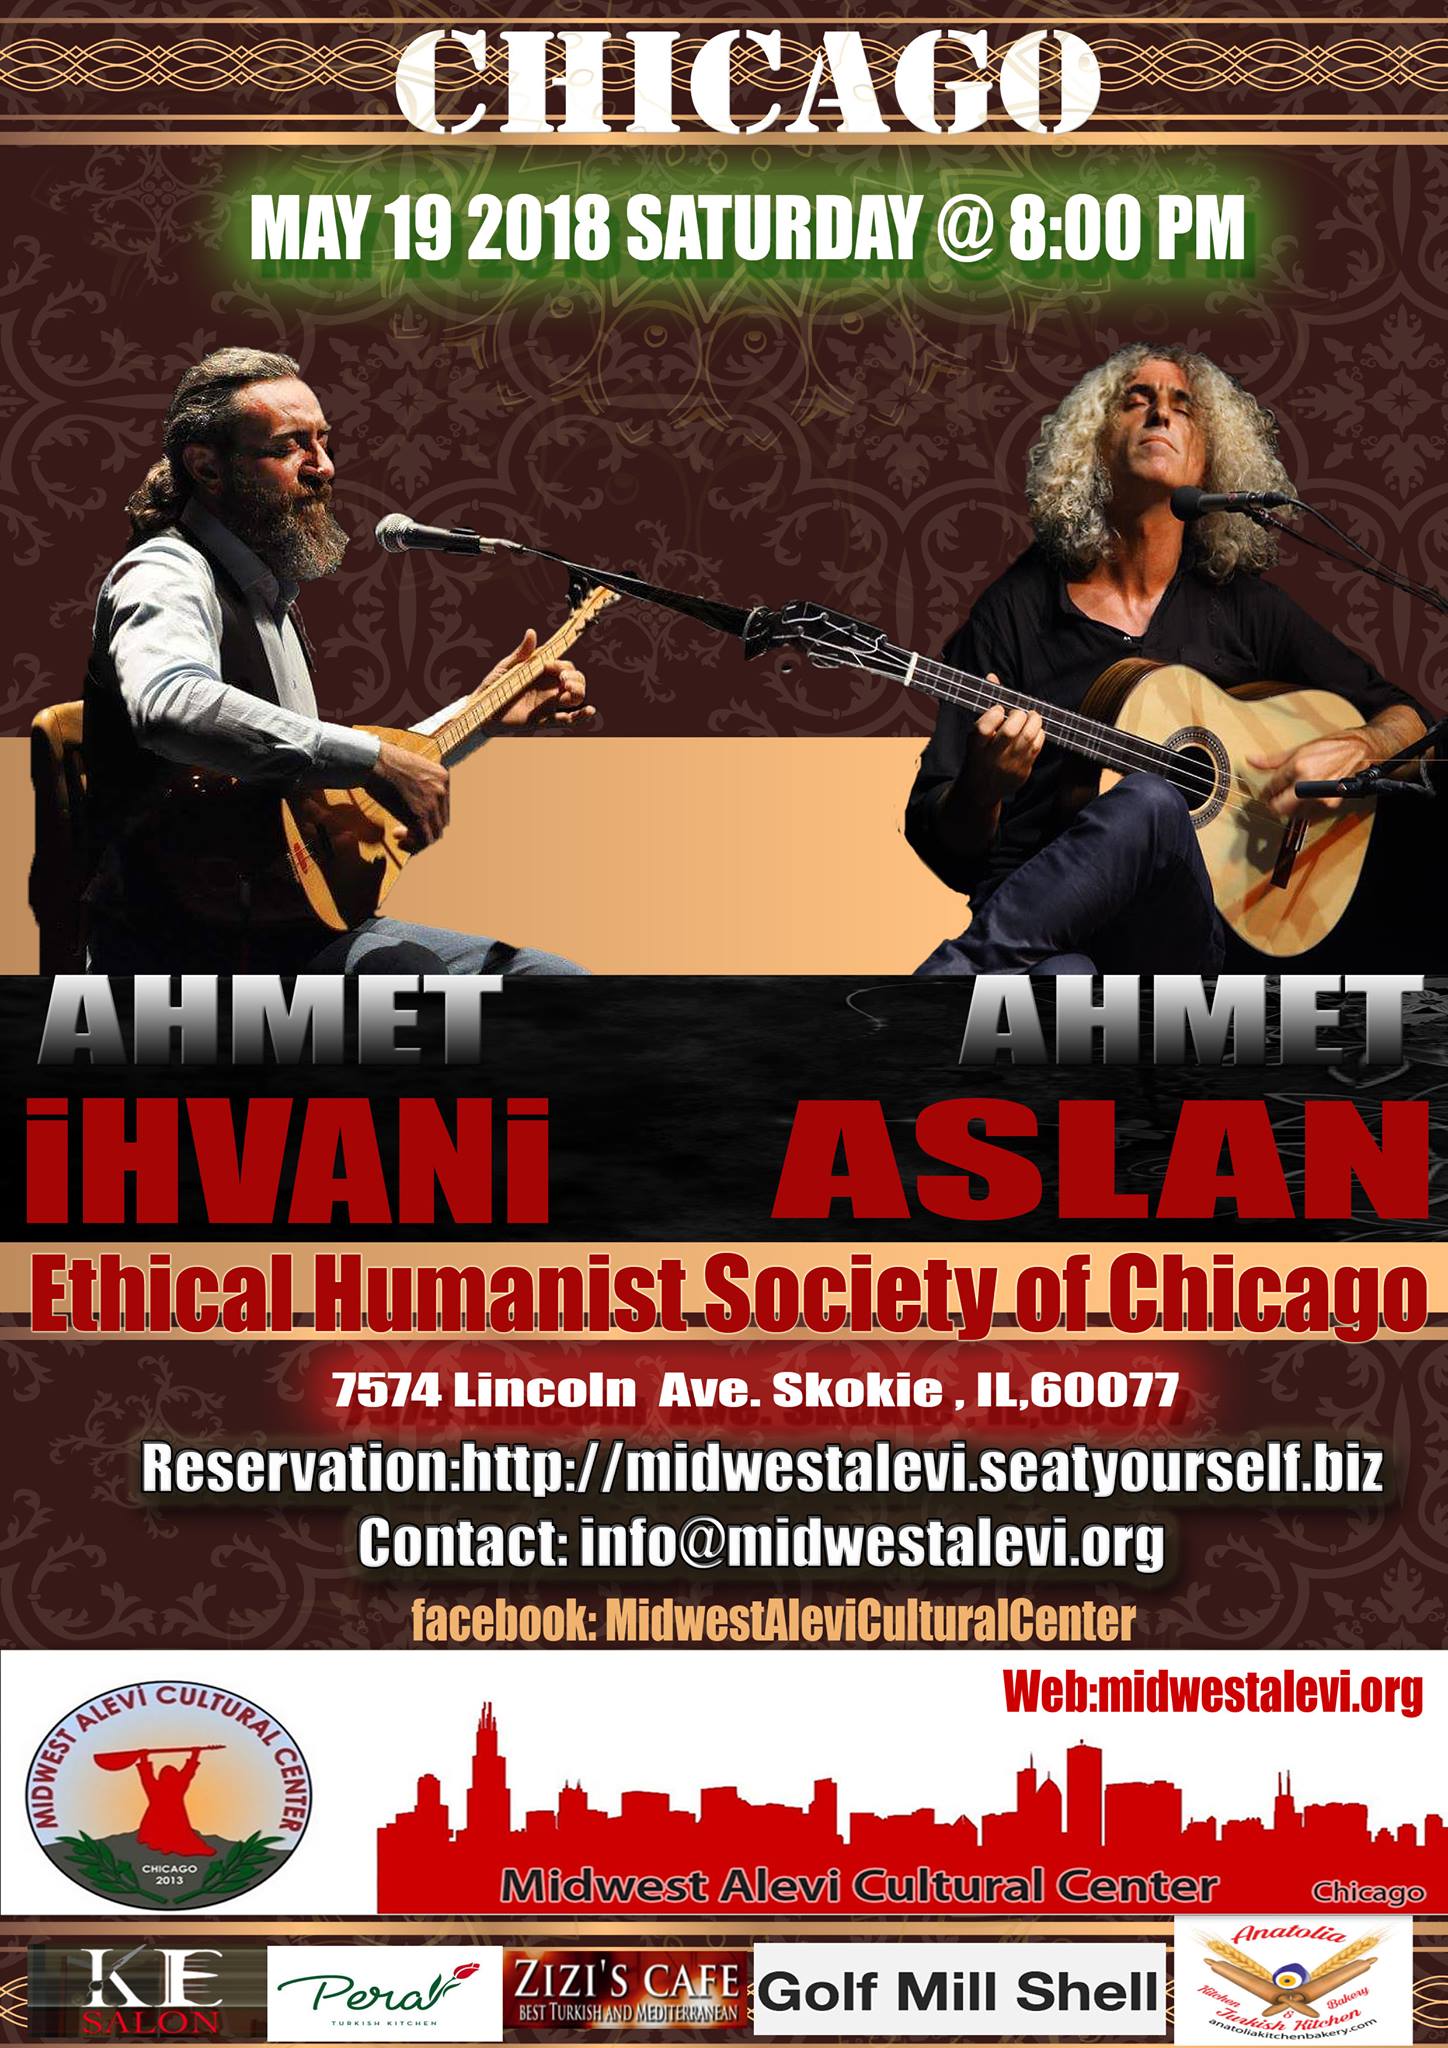 Concert: Ahmet İhvani & Ahmet Aslan, May 19th 2018